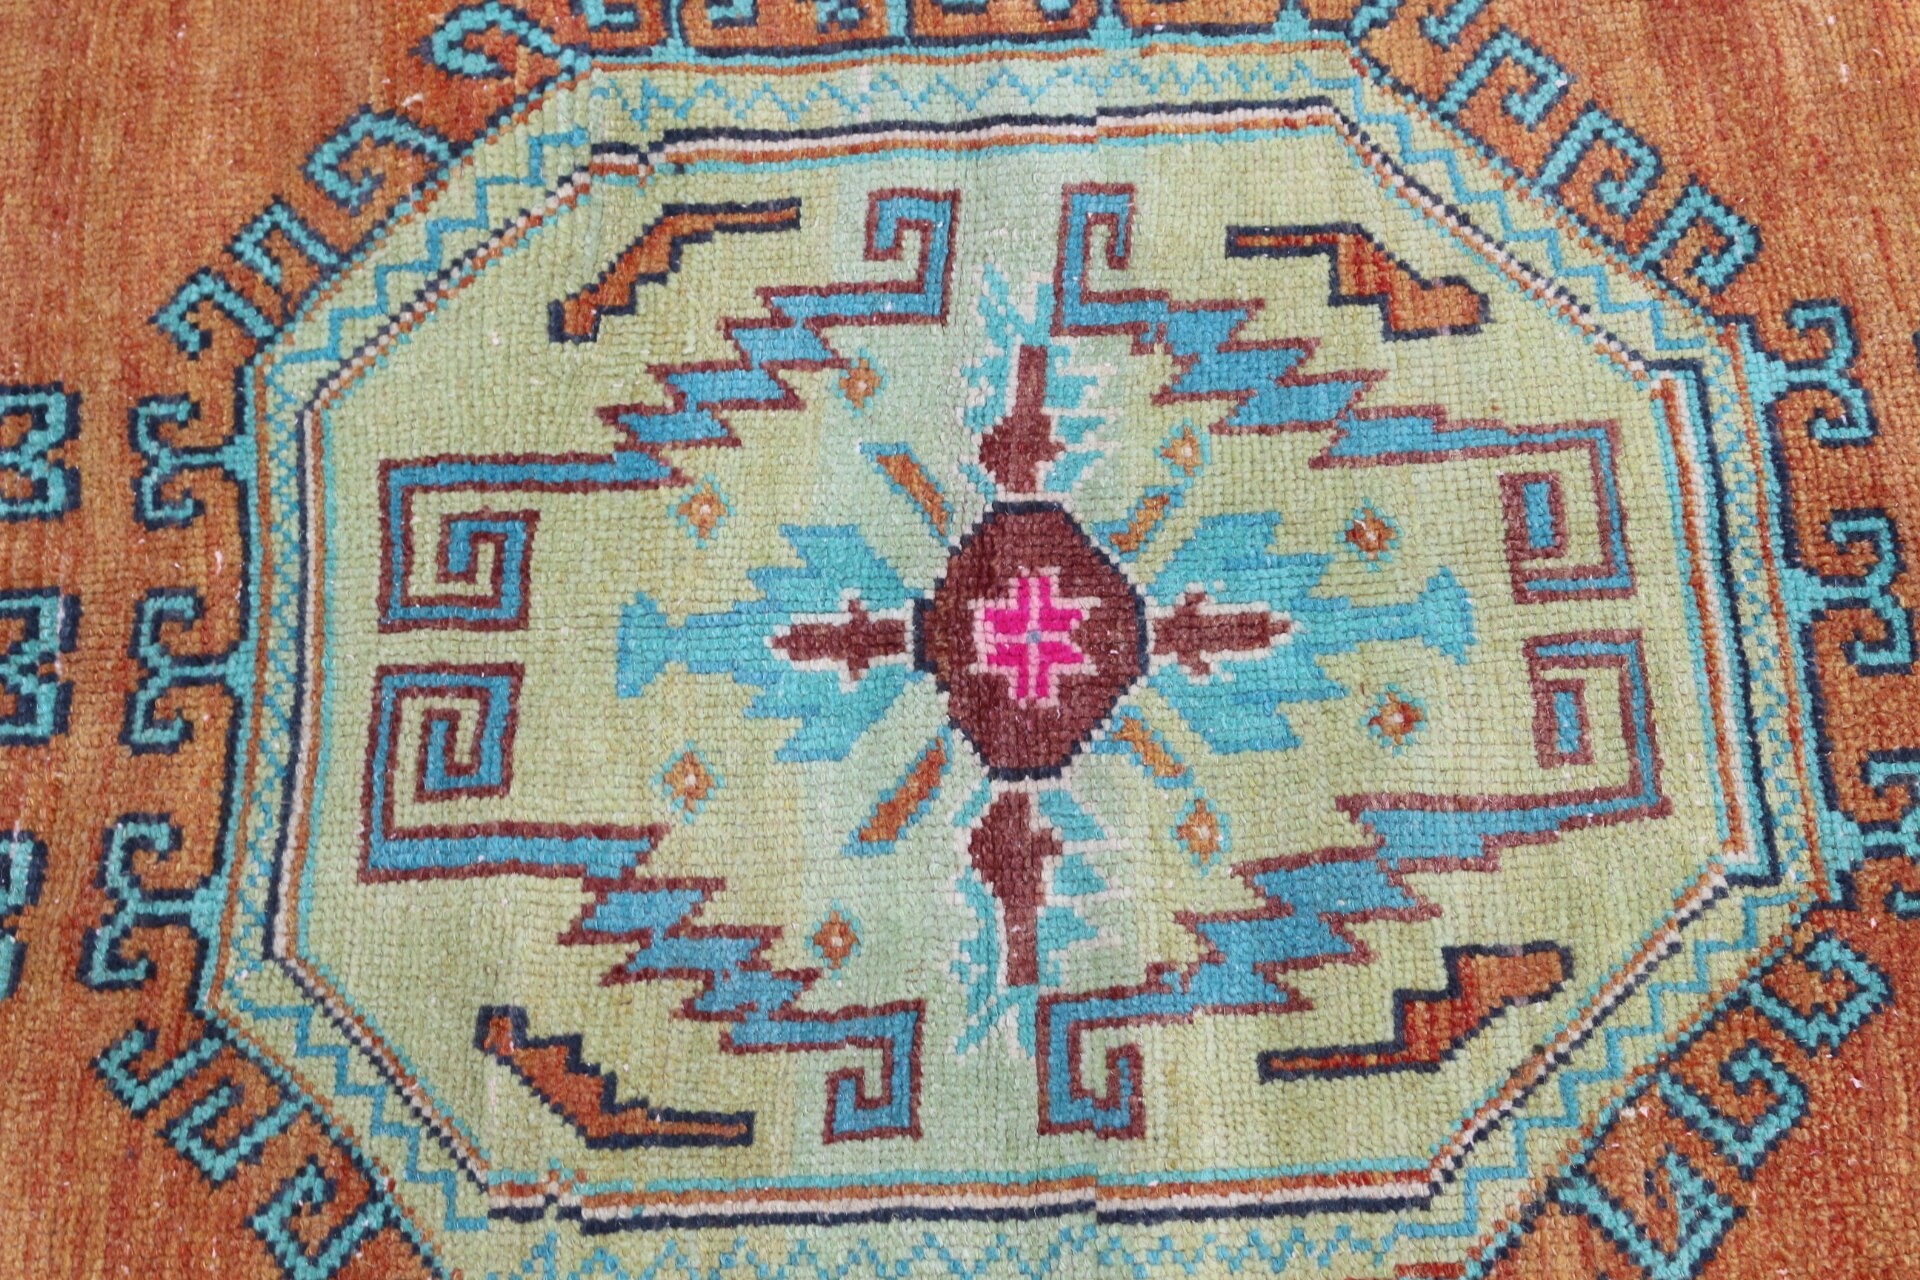 Orange Floor Rugs, Turkish Rugs, Dining Room Rug, 4.8x10.3 ft Large Rugs, Bedroom Rug, Home Decor Rug, Vintage Rug, Boho Rugs, Moroccan Rug